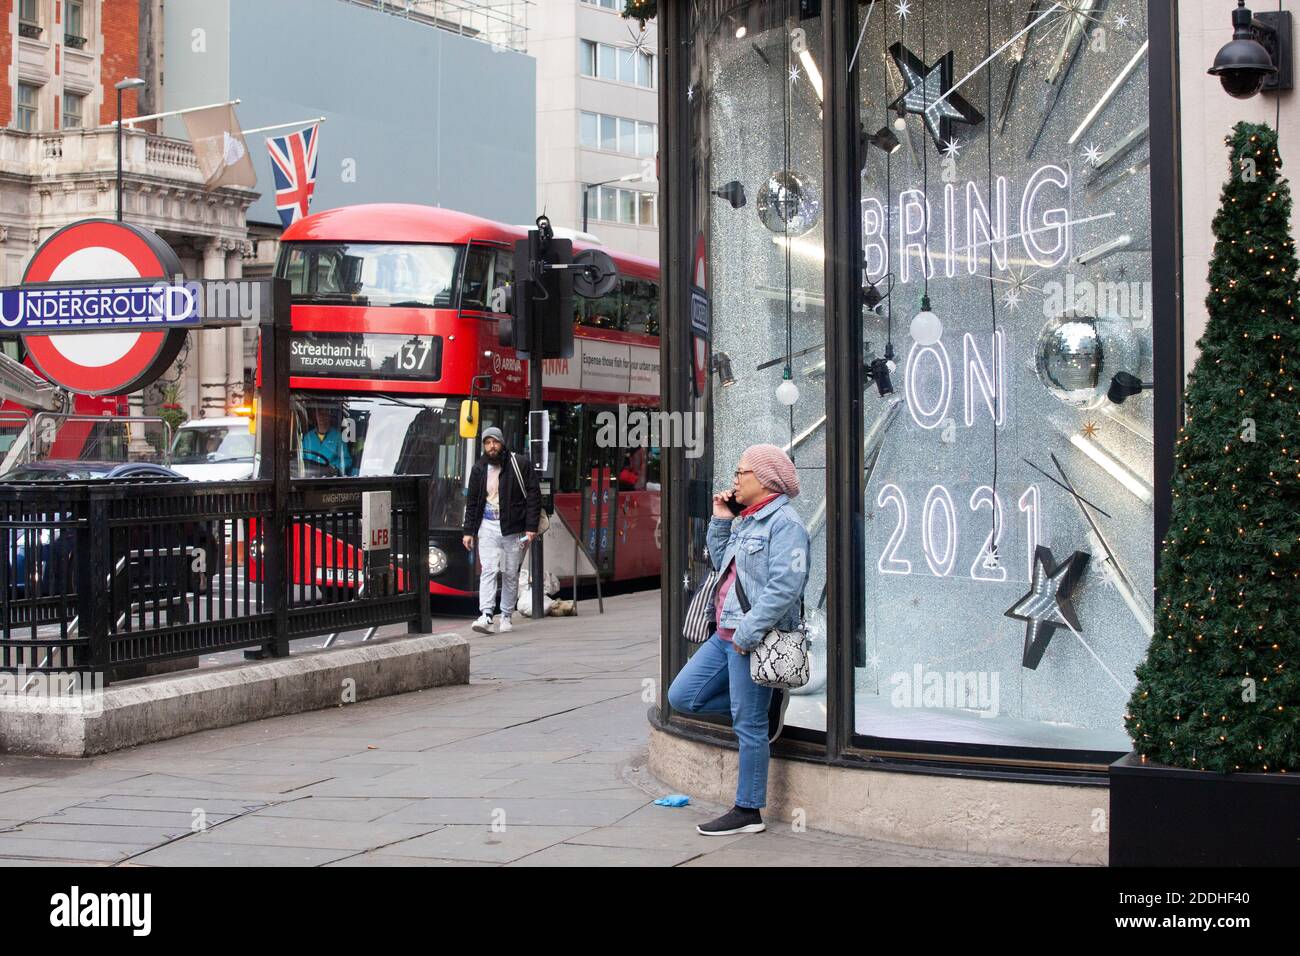 Londra, Regno Unito, 25 novembre 2020: I negozi di Londra sono chiusi e Harvey Nichols ha vetrine al neon che dicono BAH HUMBUG e PORTARE SU 2021. Il sindaco di Londra Sadiq Khan ha detto che vuole che Londra sia nel Tier 2 delle restrizioni post-lockdown. Anna Watson/Alamy Live News Foto Stock